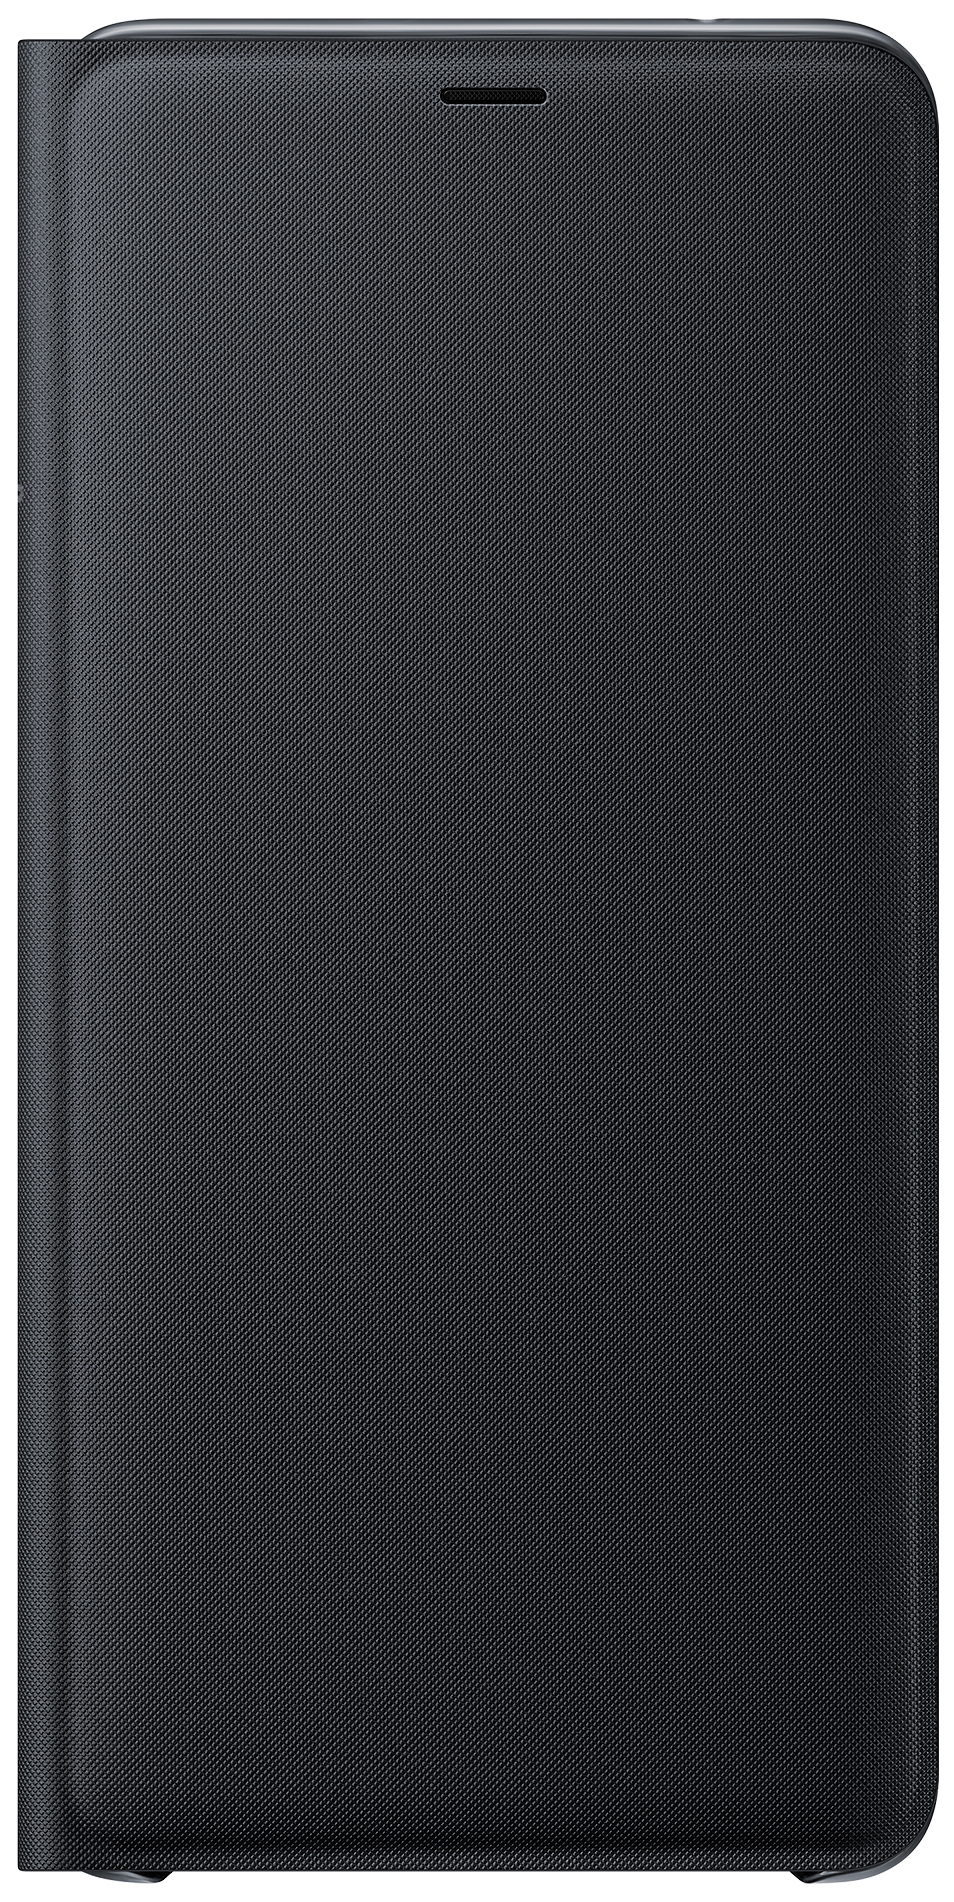 фото Универсальный чехол для смартфона samsung wallet cover для galaxy a9 (2018) black